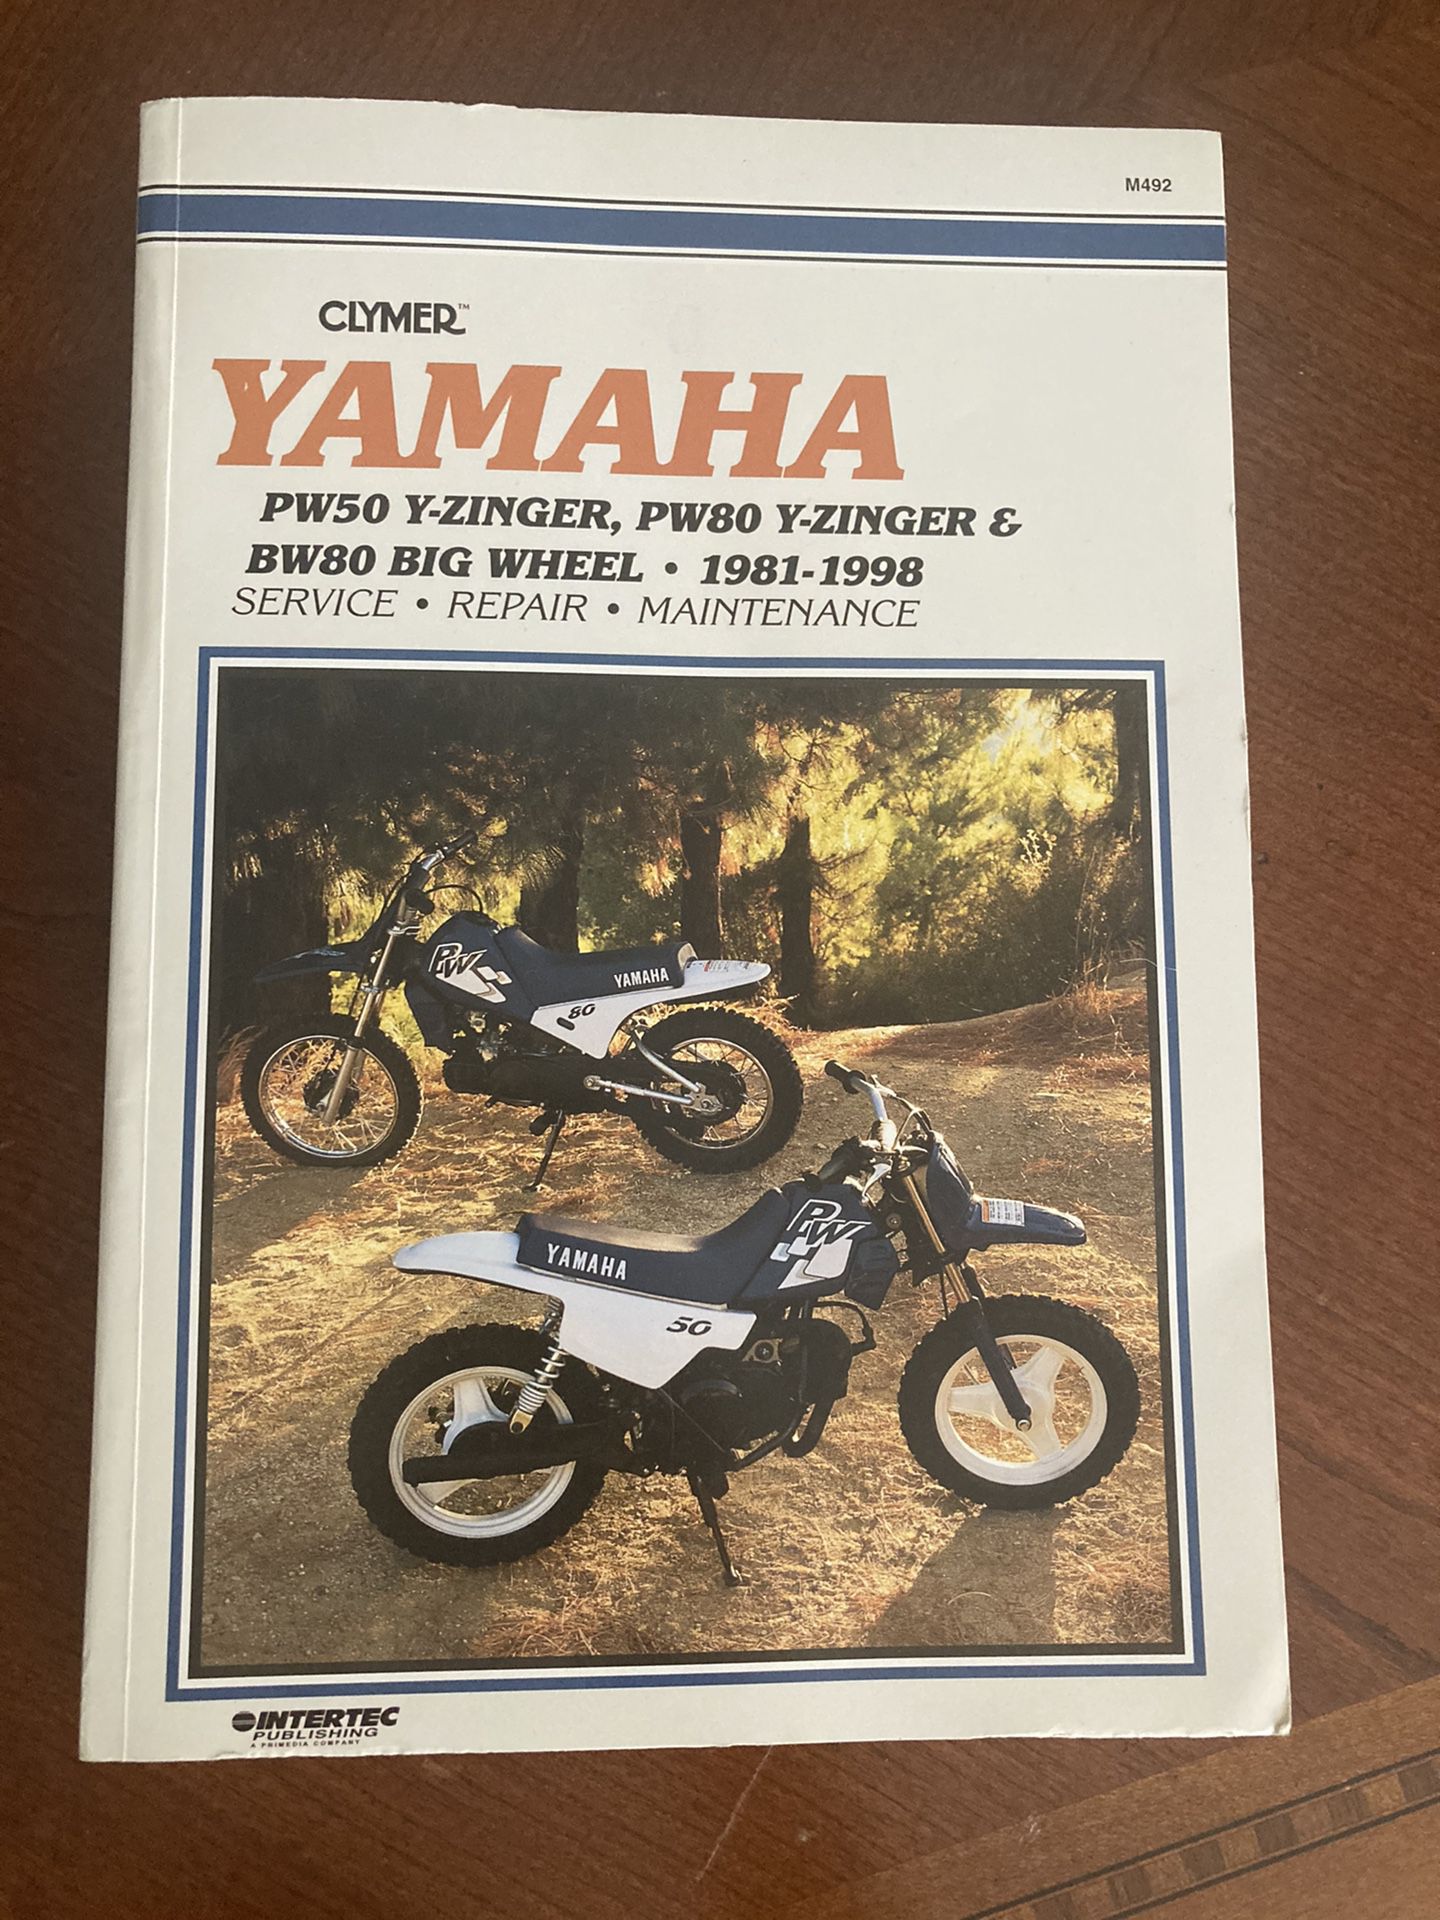 Yamaha Motorcycle Repair Guide